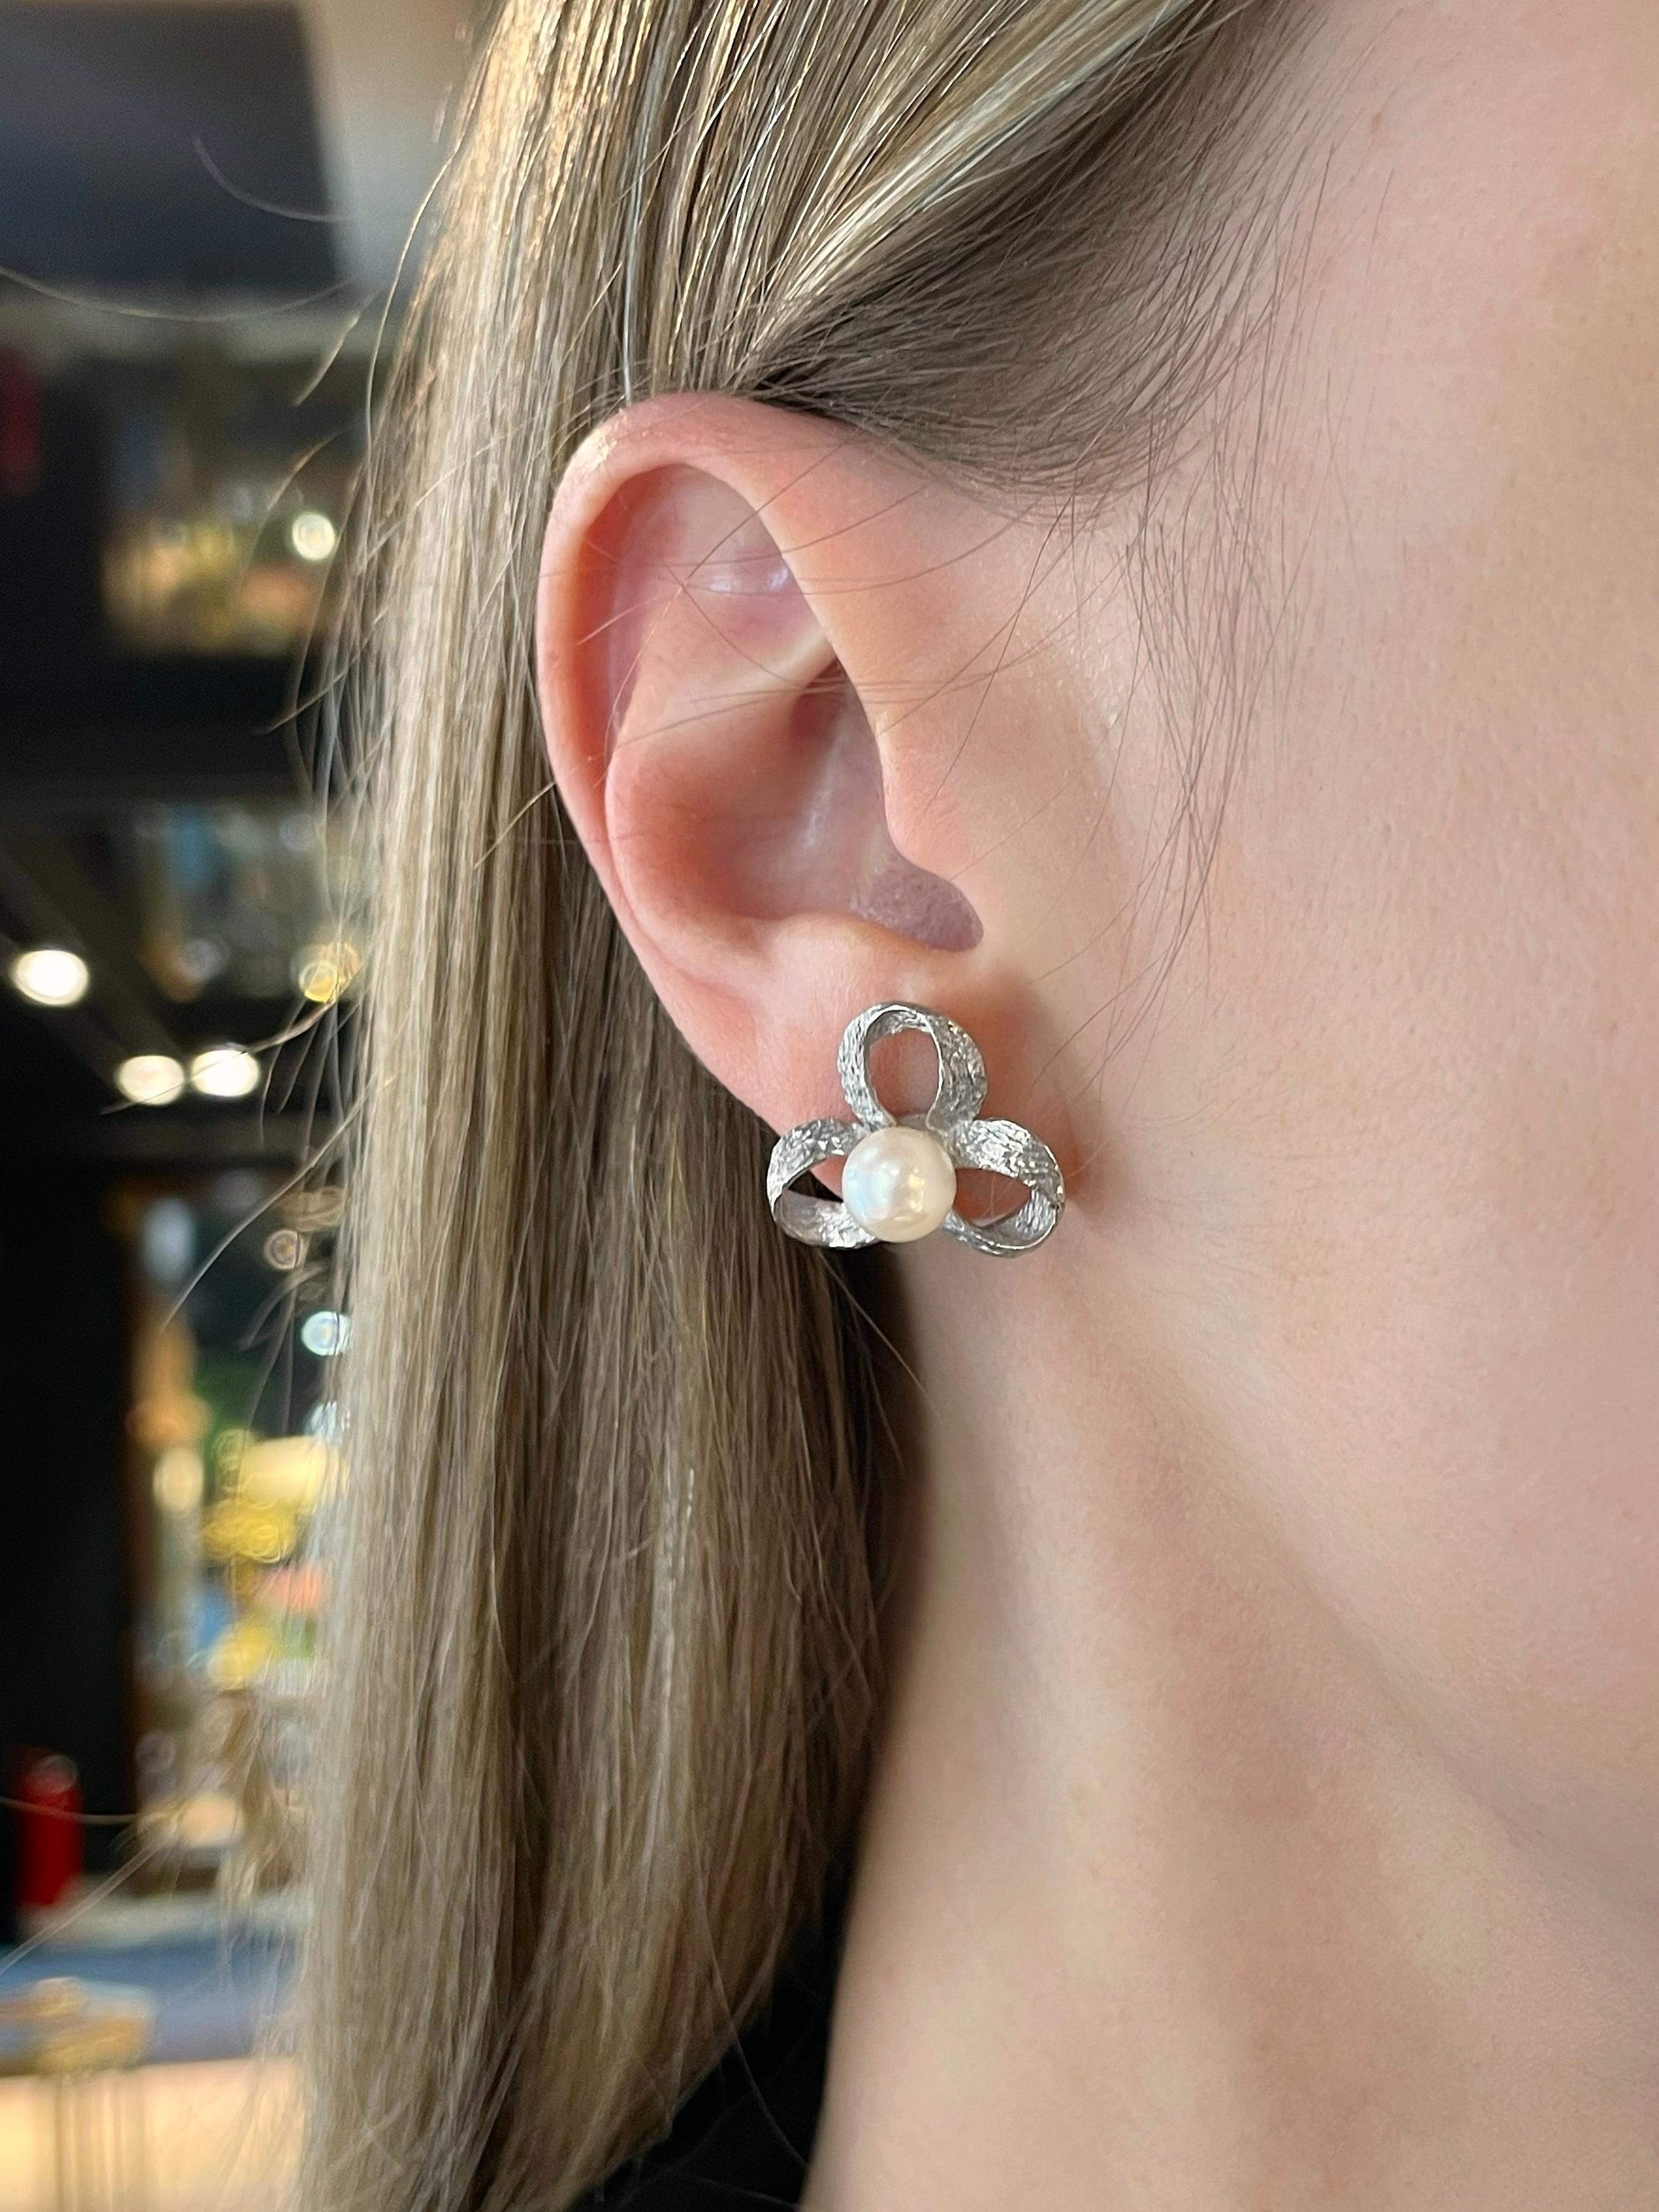 Il s'agit d'une paire de boucles d'oreilles modernes au design floral en or blanc 18 carats. Vers 2000. 

Il comporte 2 perles de culture.

Poids : 6,17 g
Taille : 2x2cm

---

Si vous avez des questions, n'hésitez pas à les poser. Nous décrivons nos